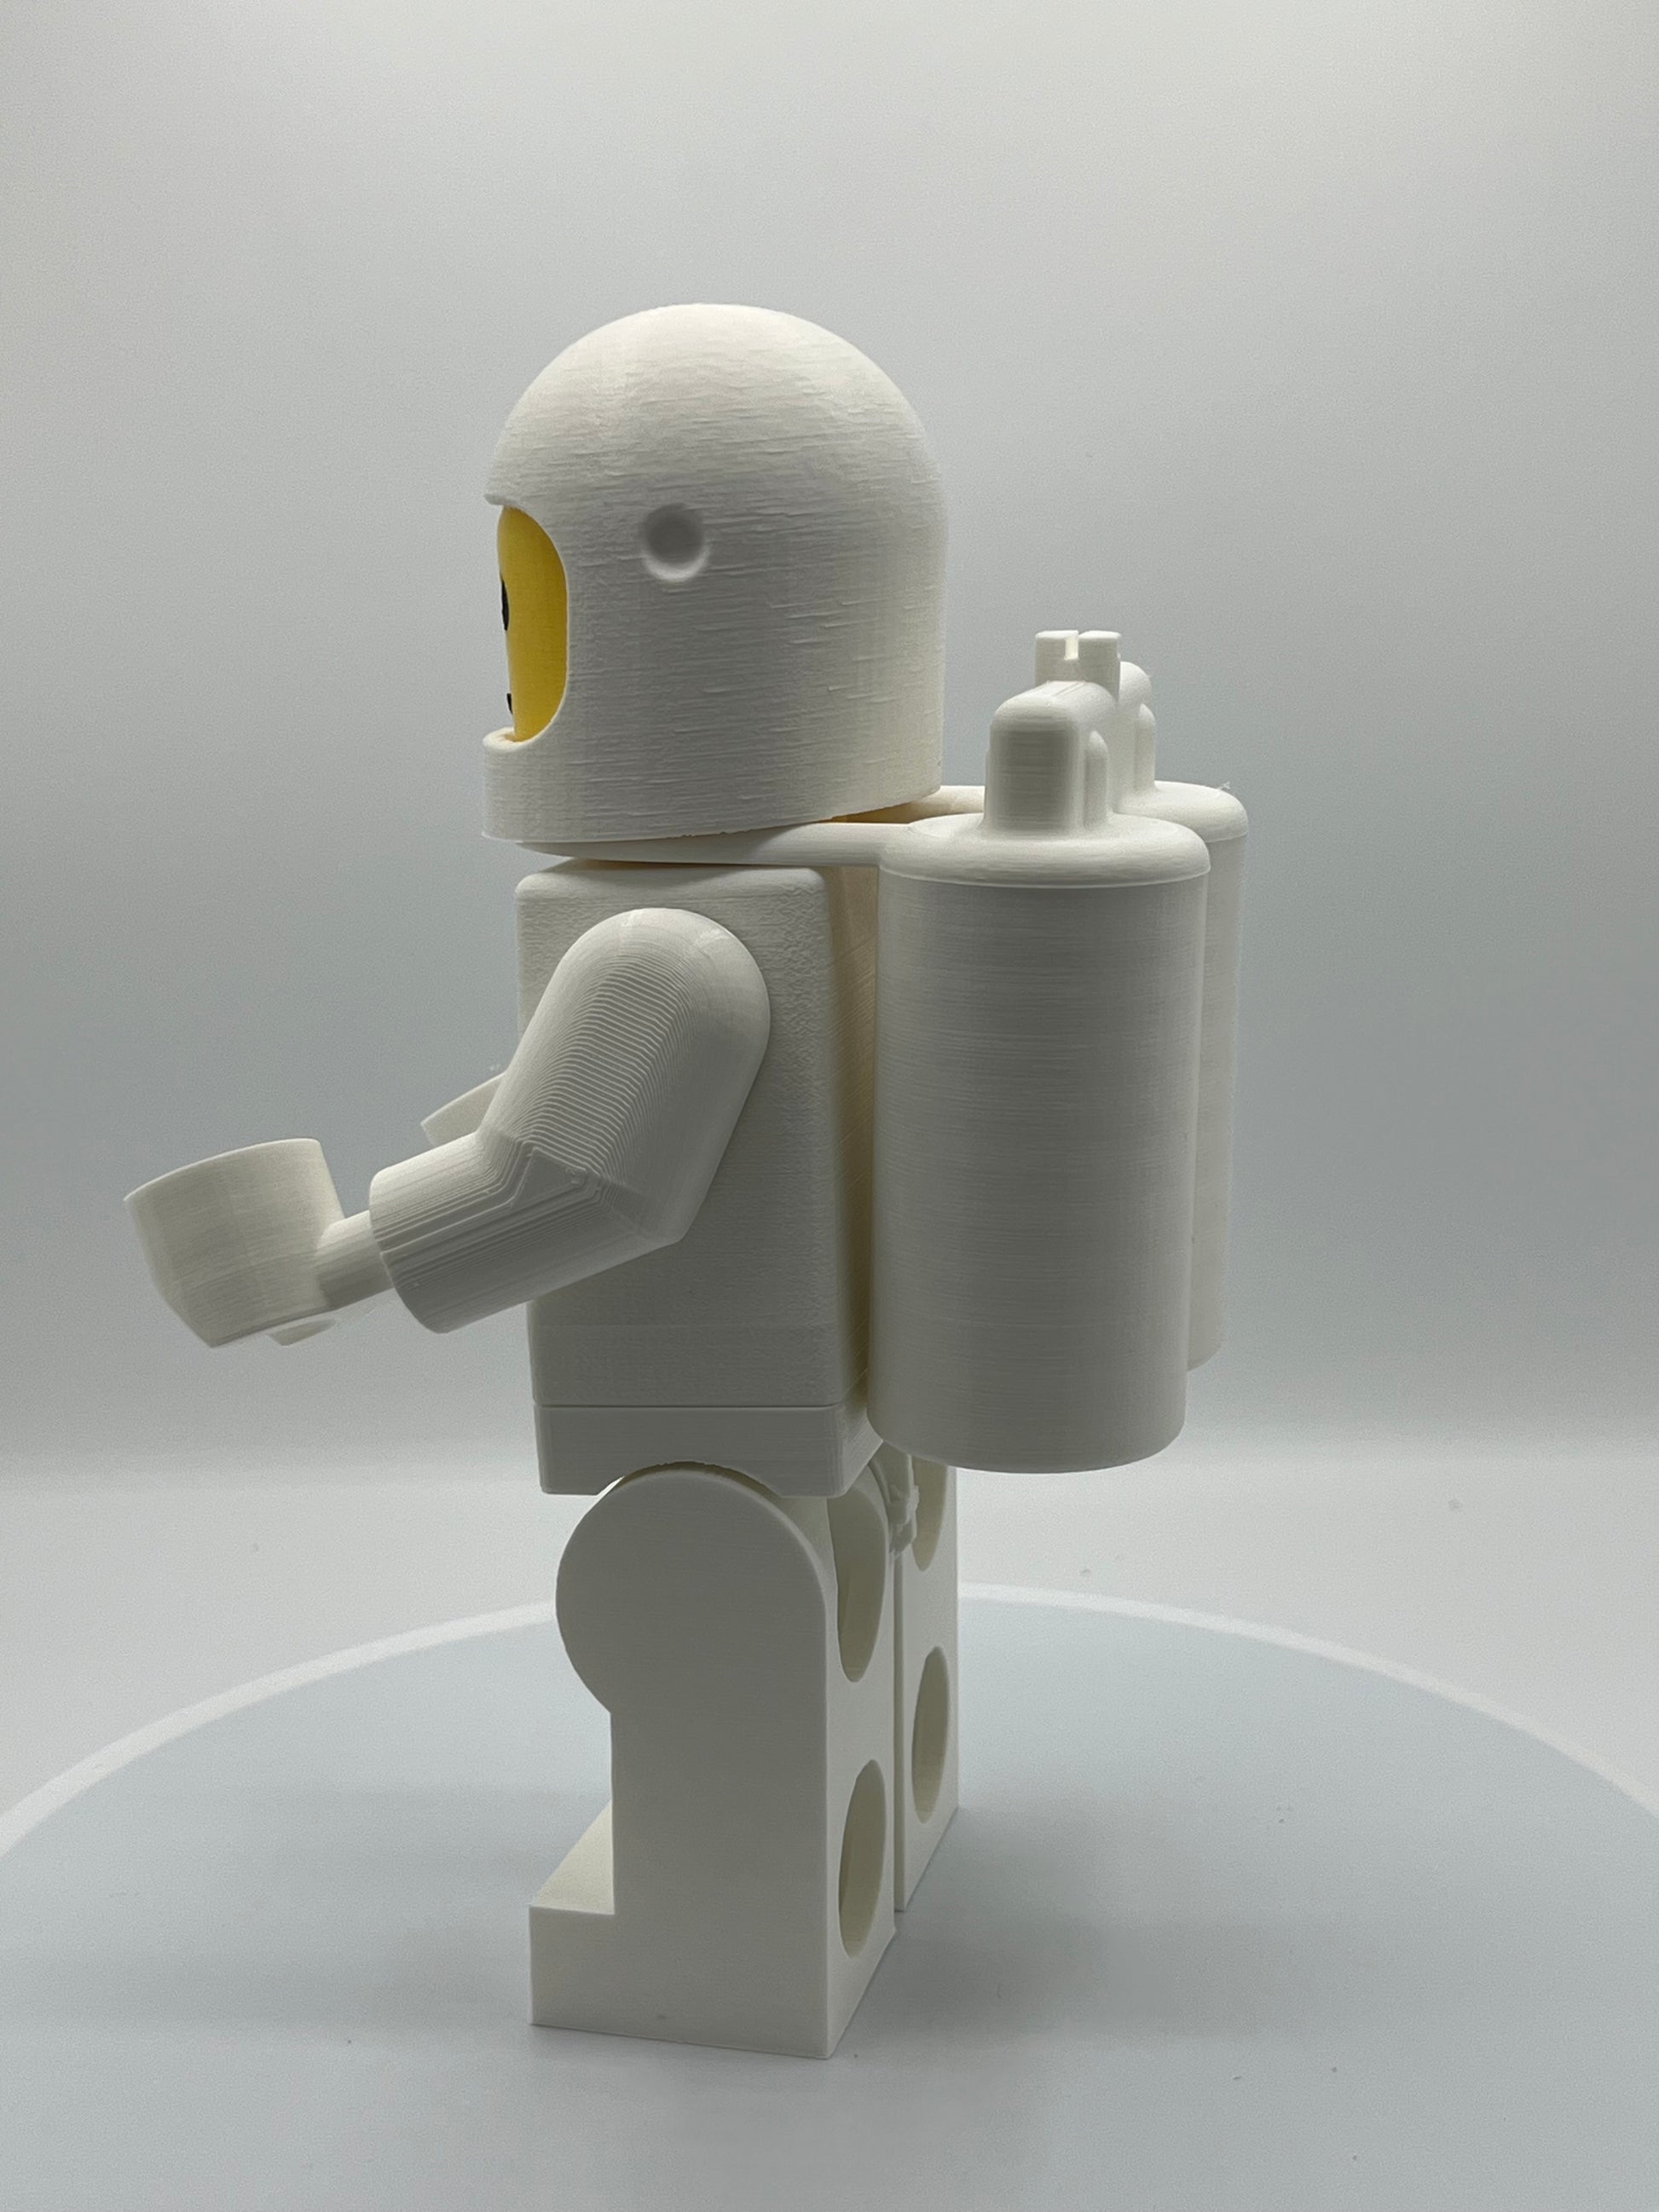 LEGO Astronaut sans Air réservoirs Figurine